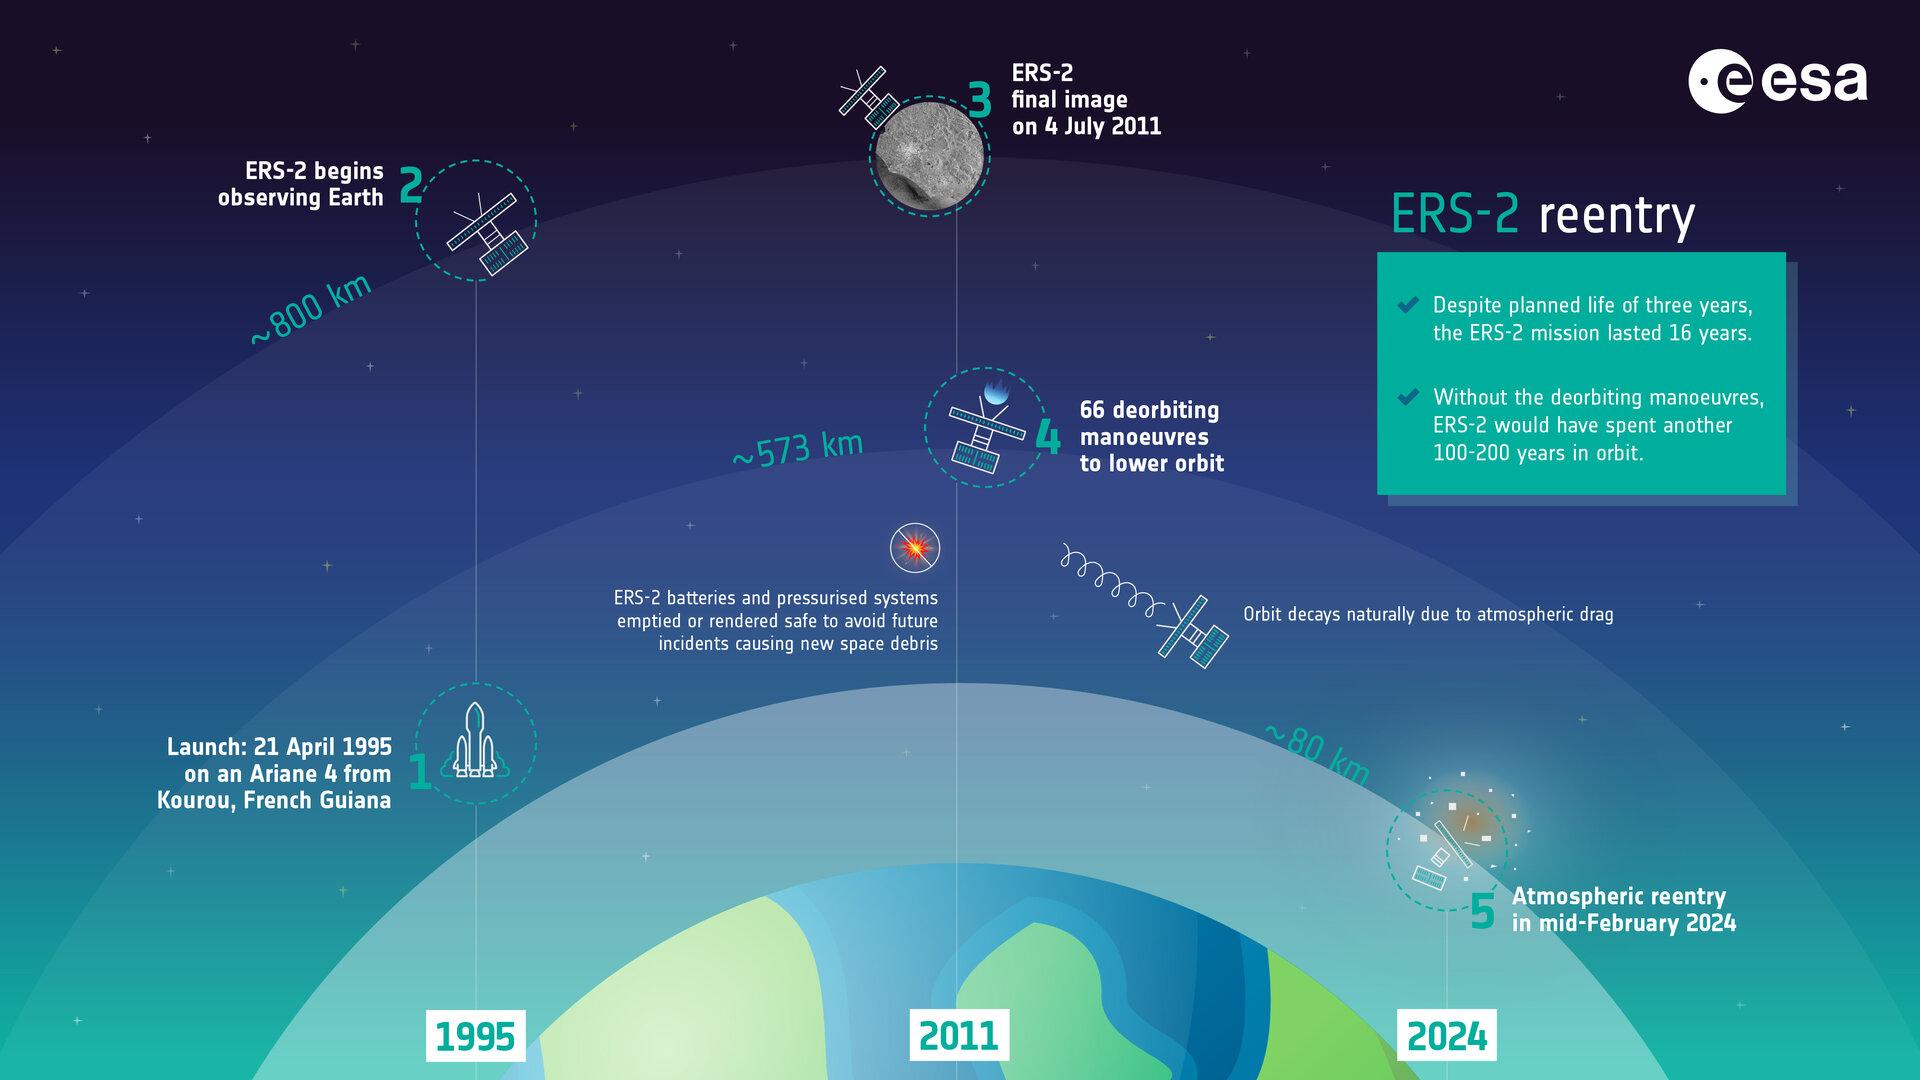 Lancé en avril 1995, ERS-2 a pris sa dernière image en juillet 2011. Ses batteries et son système pressurisé ont été vidés ou sécurisés afin d'éviter de futurs incidents qui pourraient générer de nouveaux débris spatiaux. En tout, 66 manœuvres ont été nécessaires pour faire redescendre le satellite: sans elles, il aurait pu encore orbiter notre Terre pendant 100 à 200 ans. ERS-2 se consumera quand il atteindra les couches basses de l'atmosphère à la mi-février 2024. [ESA]